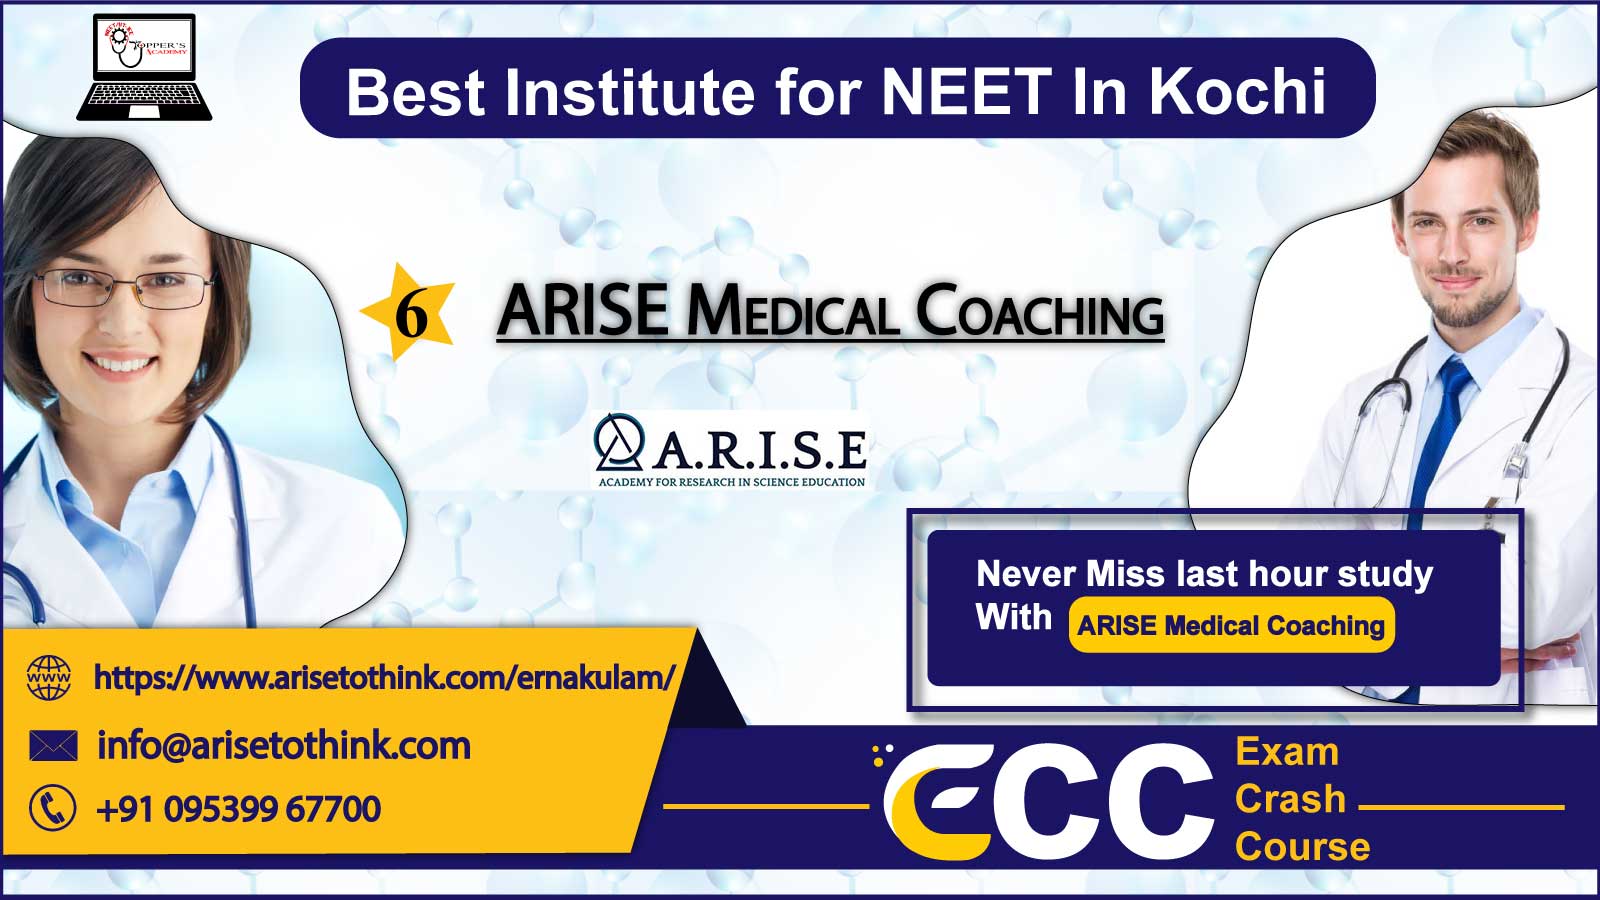 ARISE Medical Coaching In Kochi